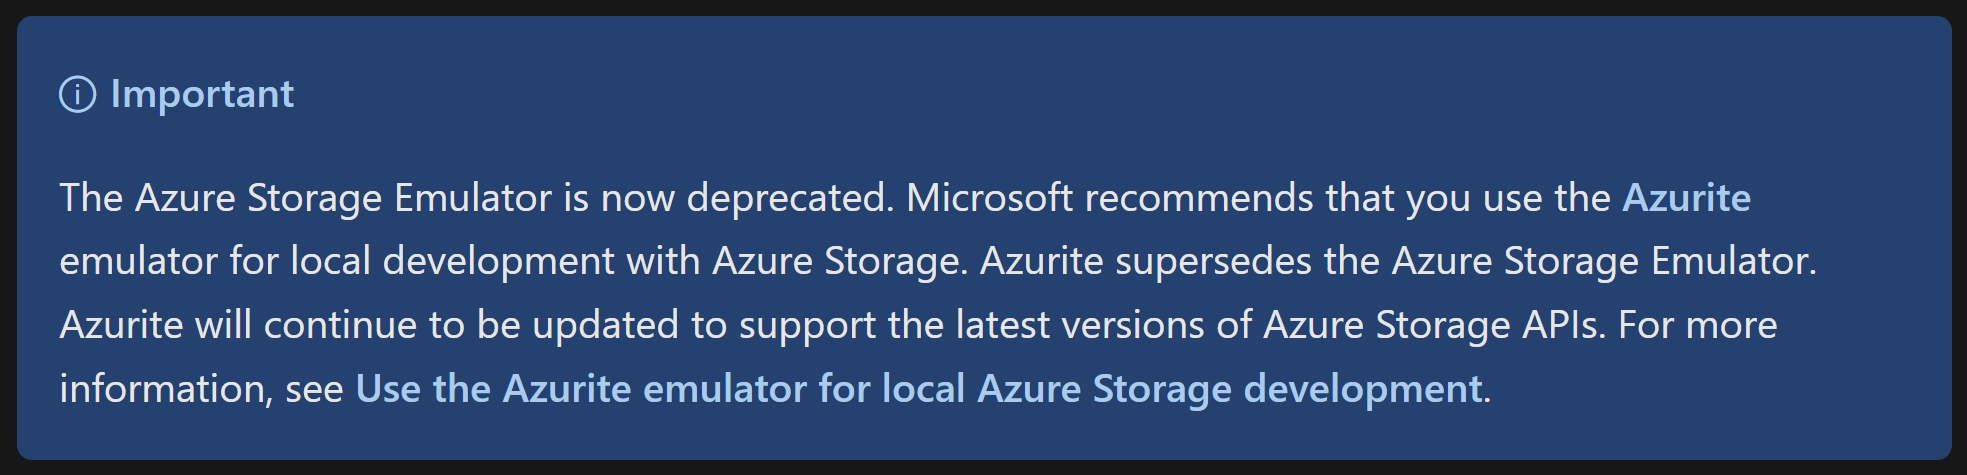 Documentation about Azure Storage emulator deprecation.